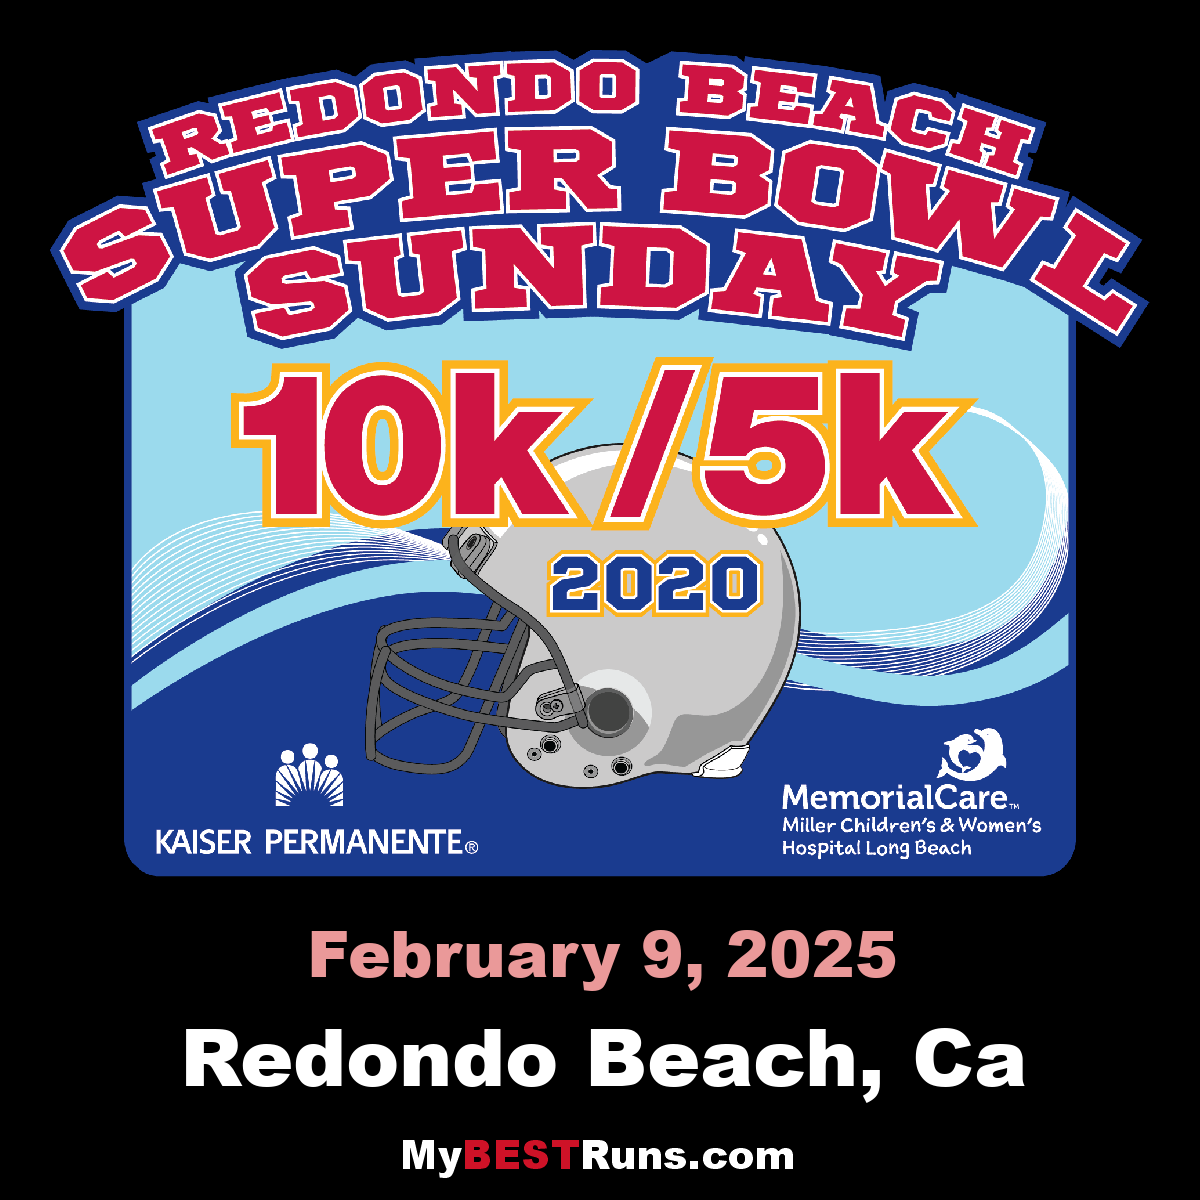 Super Bowl Sunday 10K and 5K Run/Walk